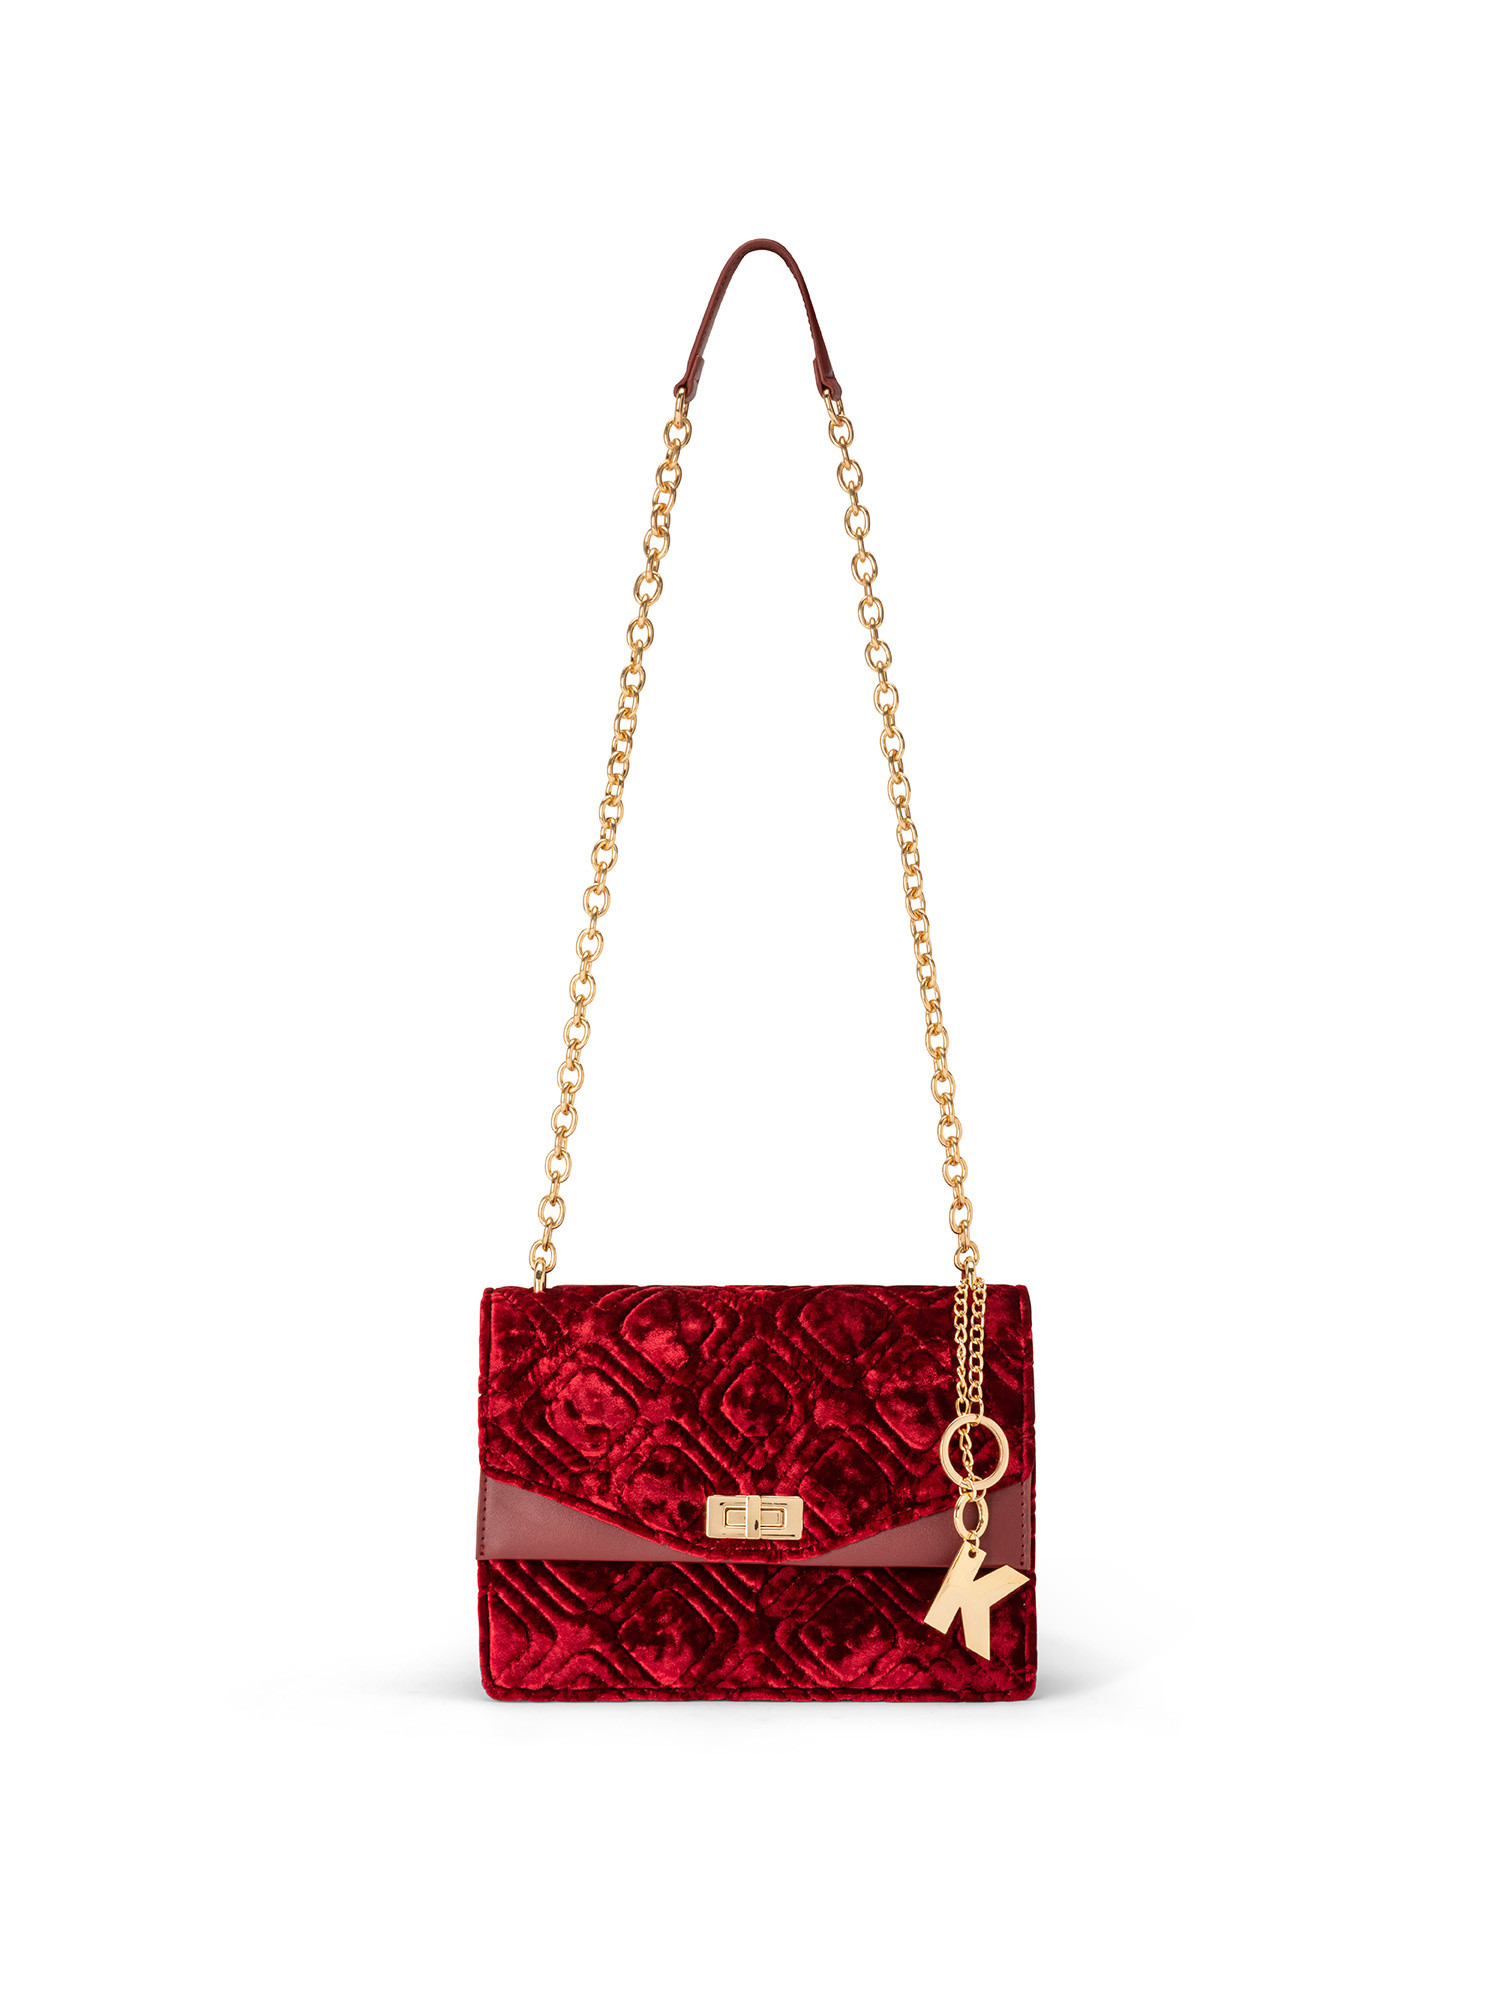 Koan - Velvet shoulder bag, Red, large image number 0